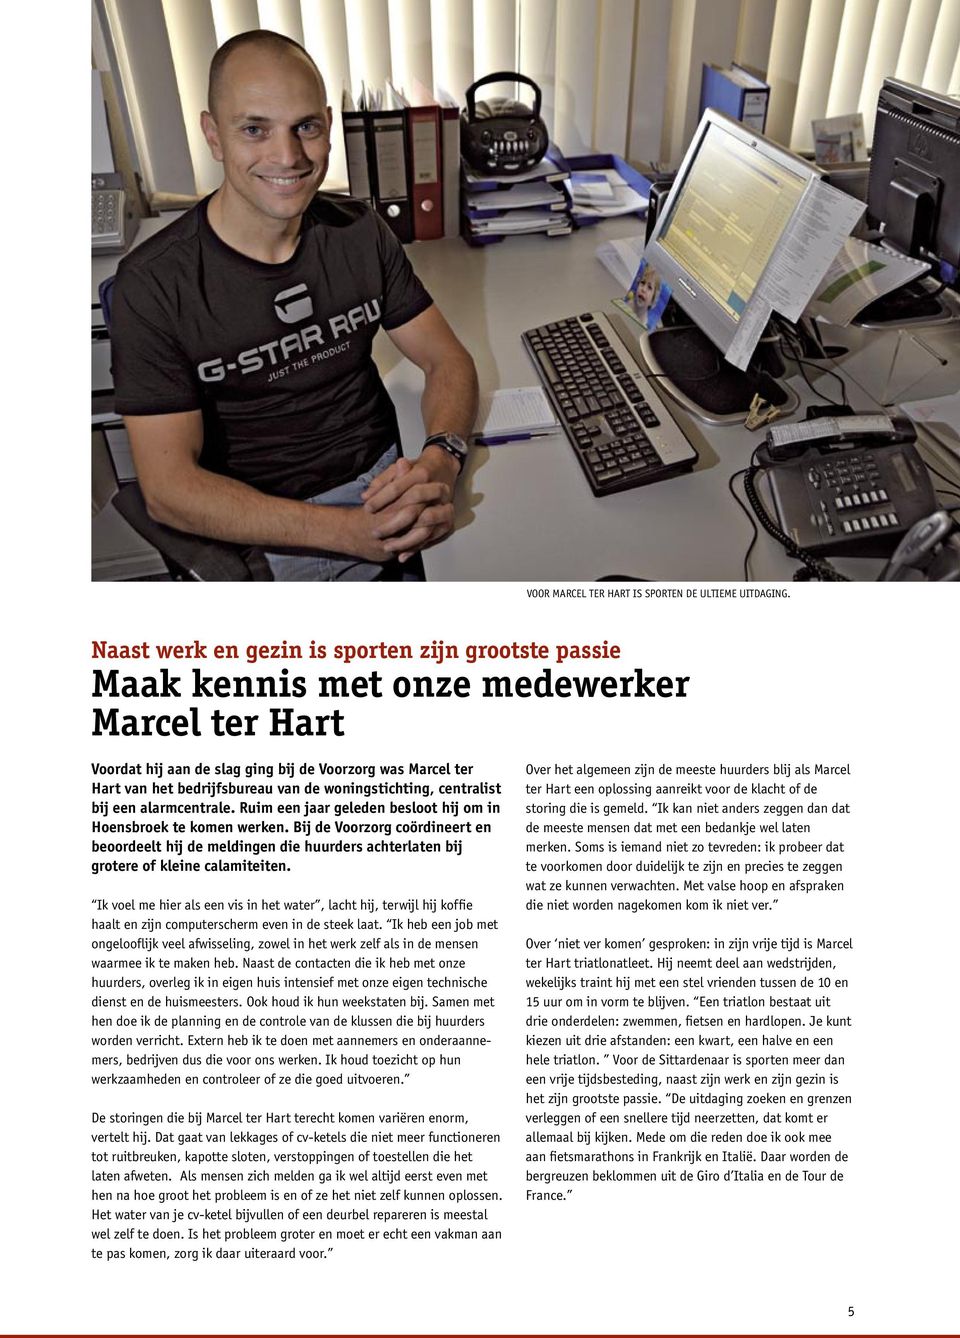 woningstichting, centralist bij een alarmcentrale. Ruim een jaar geleden besloot hij om in Hoensbroek te komen werken.